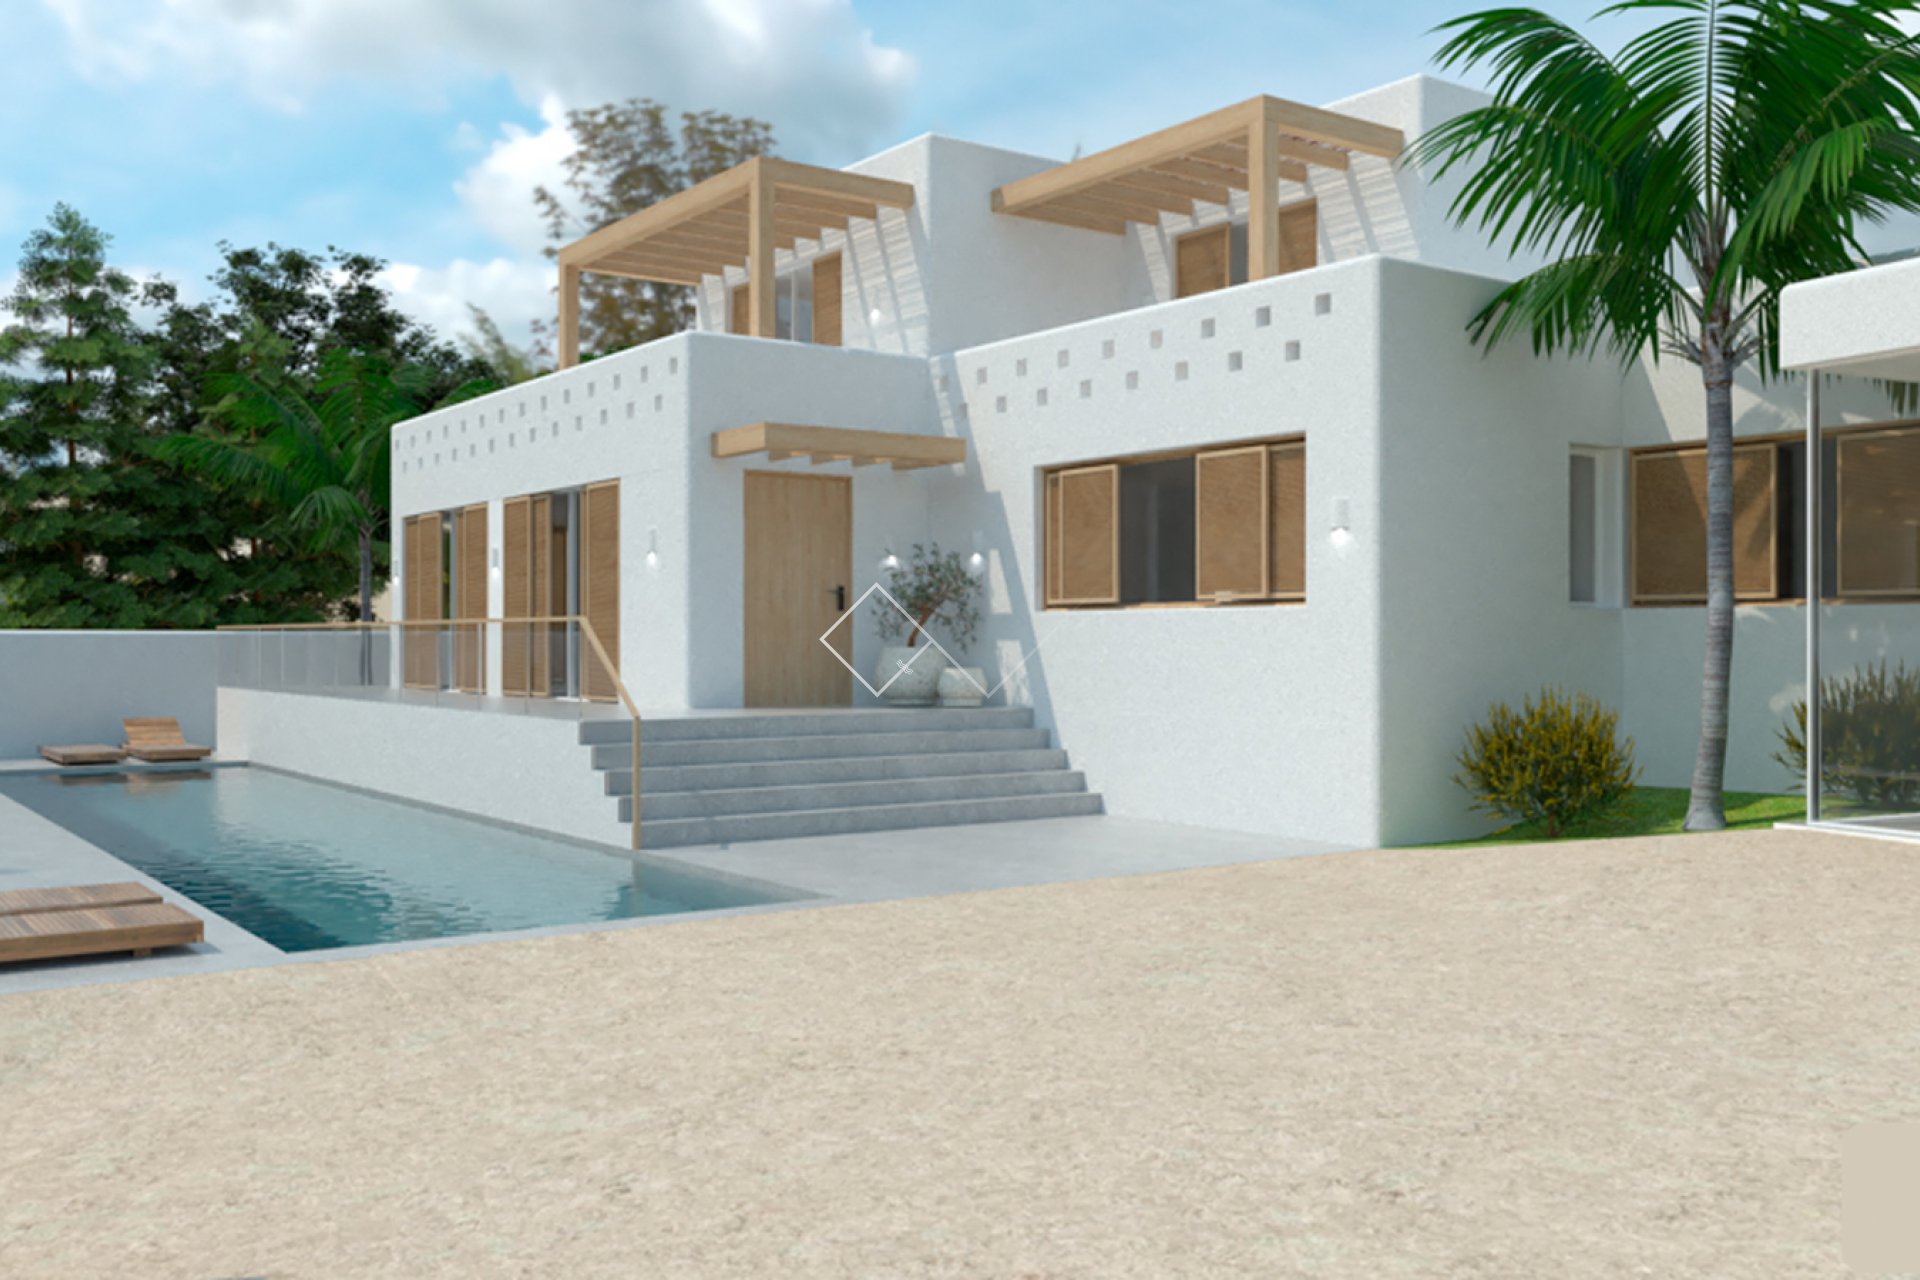 Villa de style Ibiza en vente à Moraira